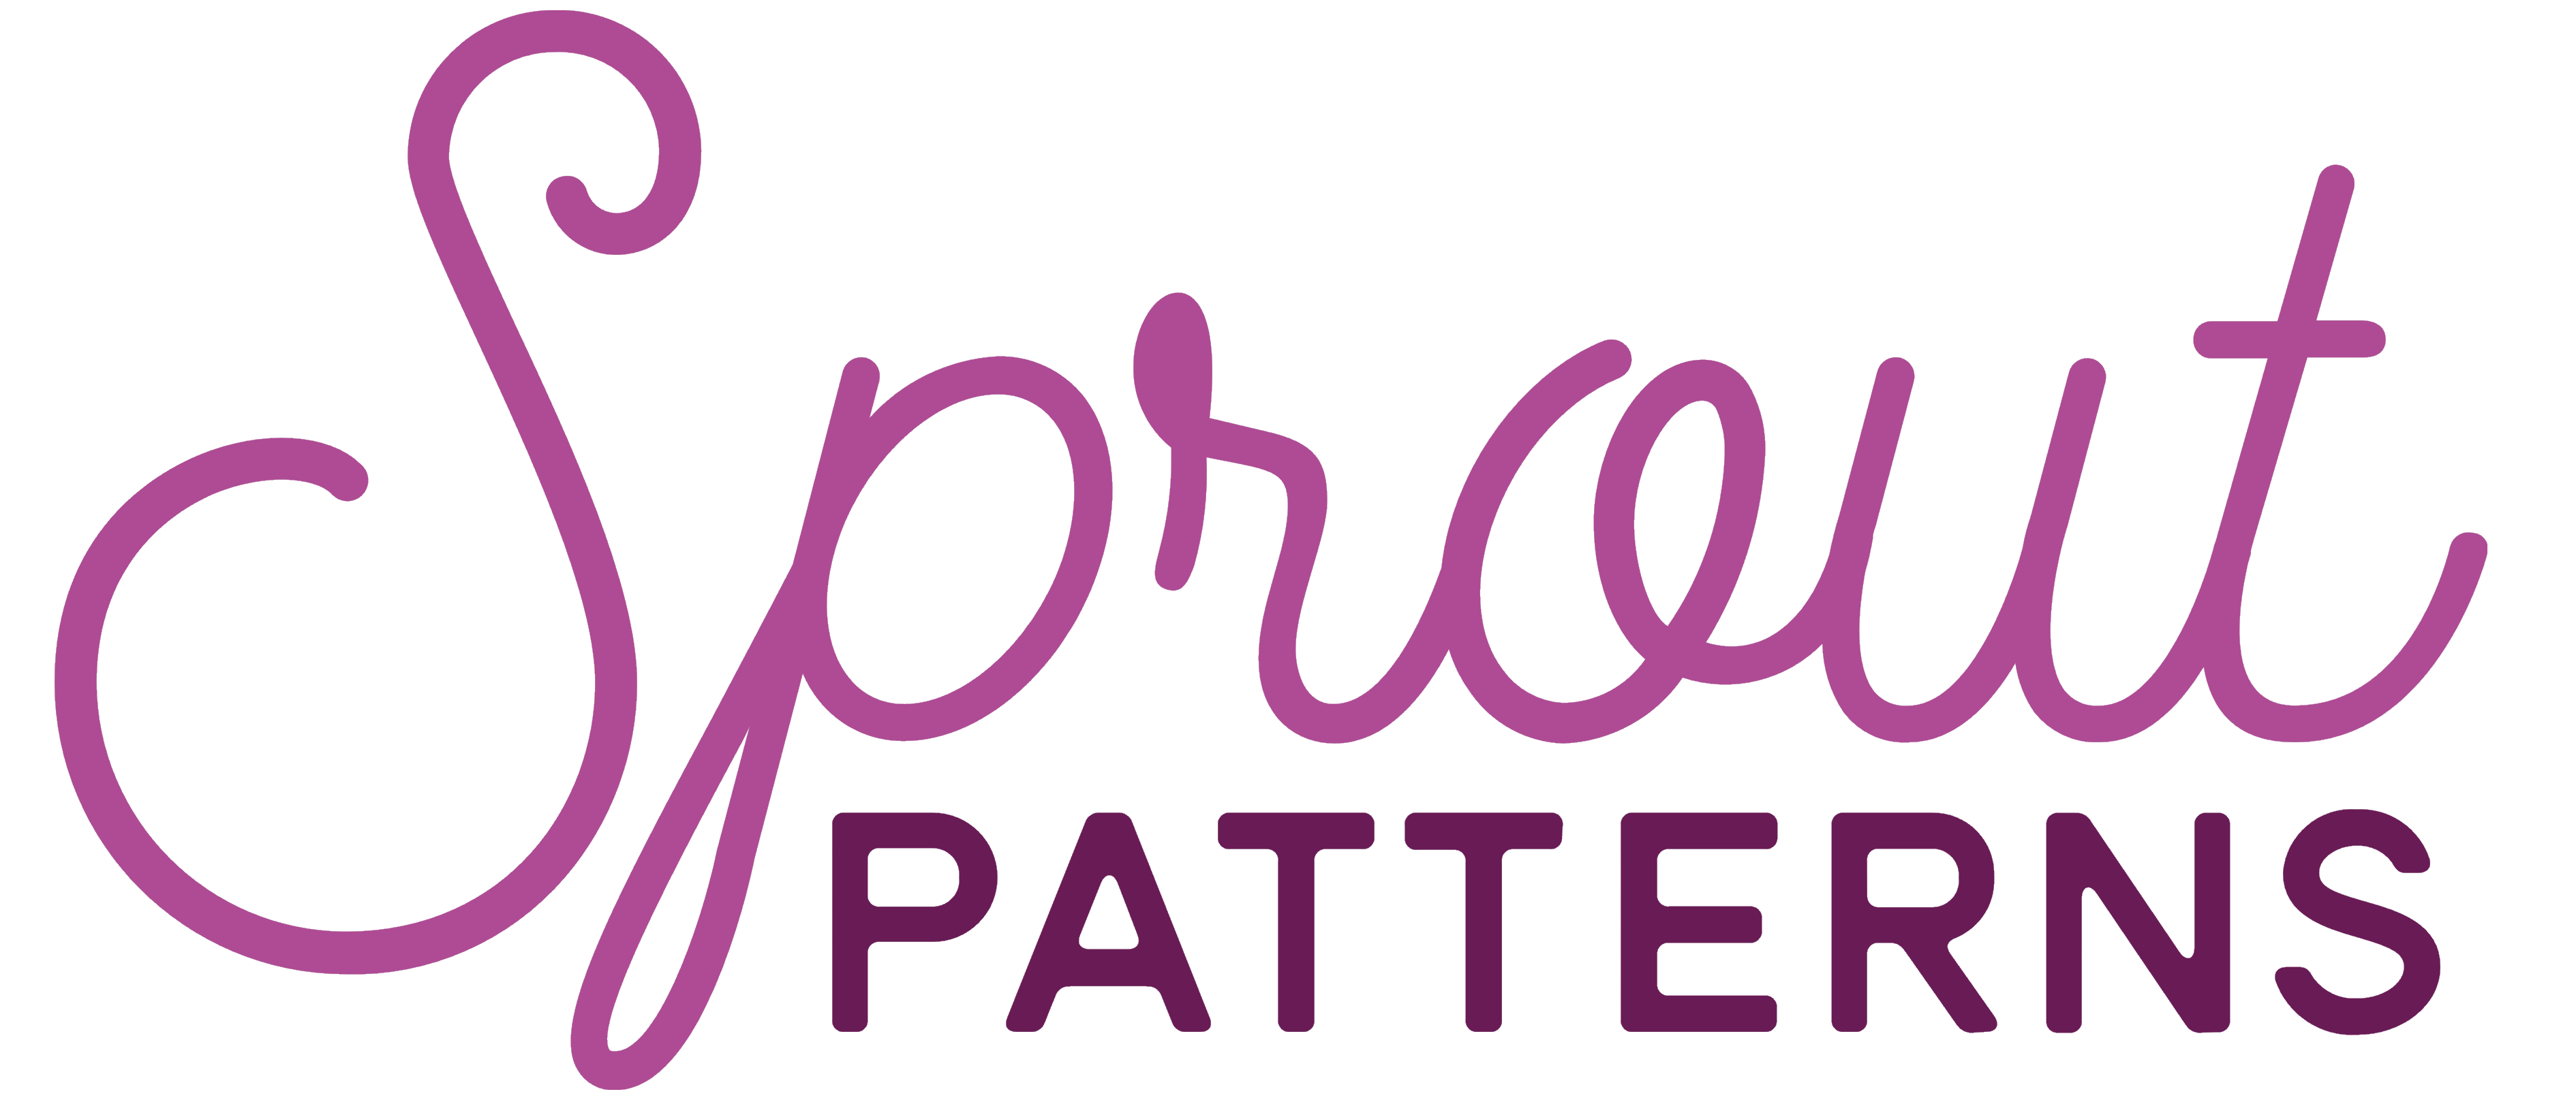 Sprout Patterns logo, logotype